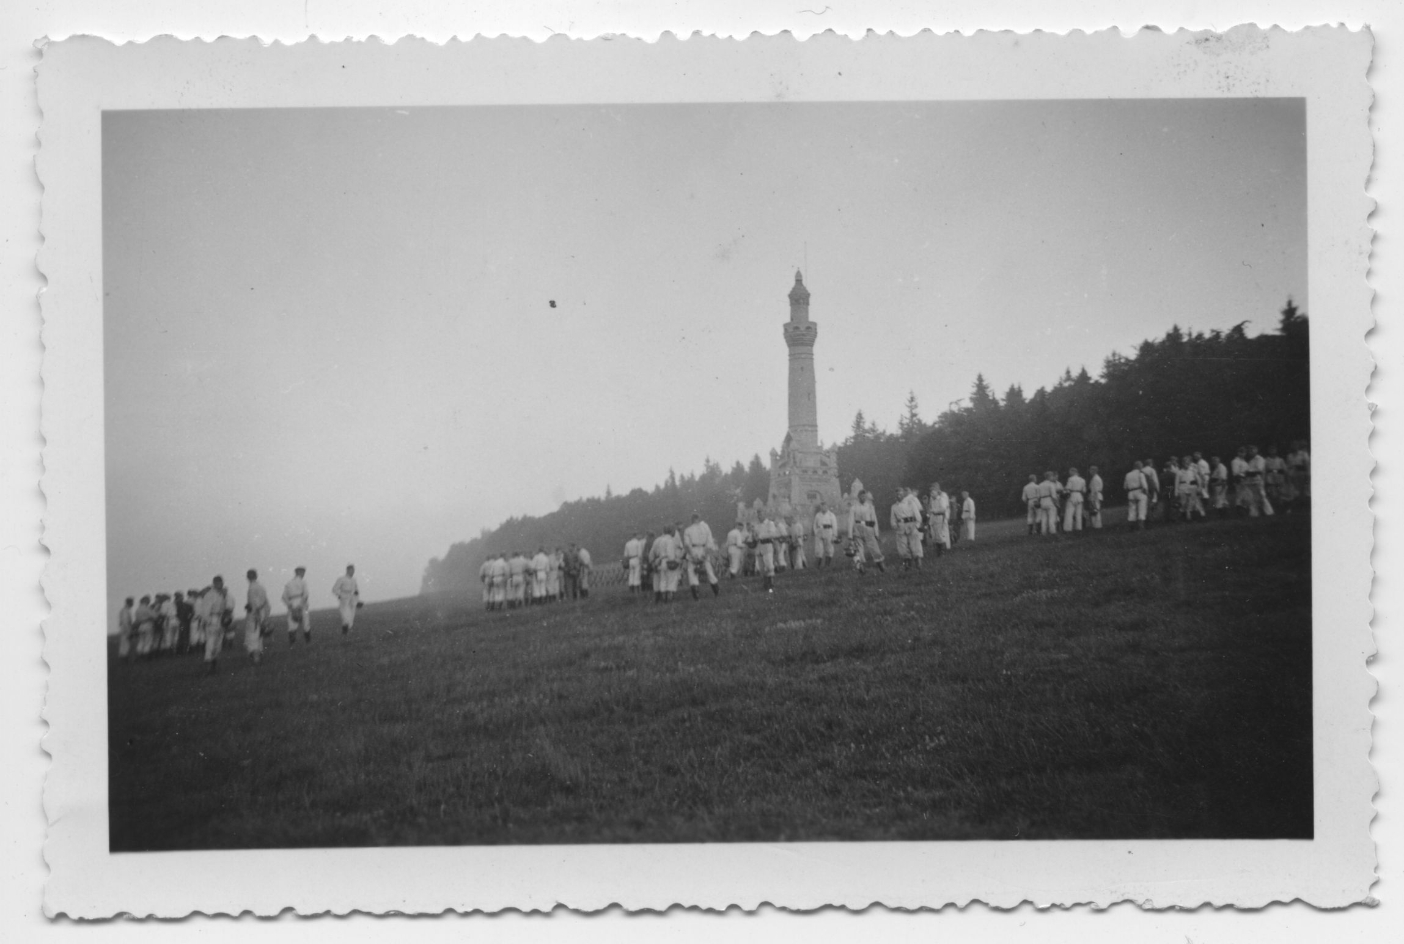 SS-Angehörige der Totenkopf-Standarte 14 bei einer Gefechtsübung am Südhang des Ettersberges. Die uniformierten Männer stehen in Gruppen auf der offenen Wiese. Im Hintergrund ist der Bismarckturm zu erkennen.